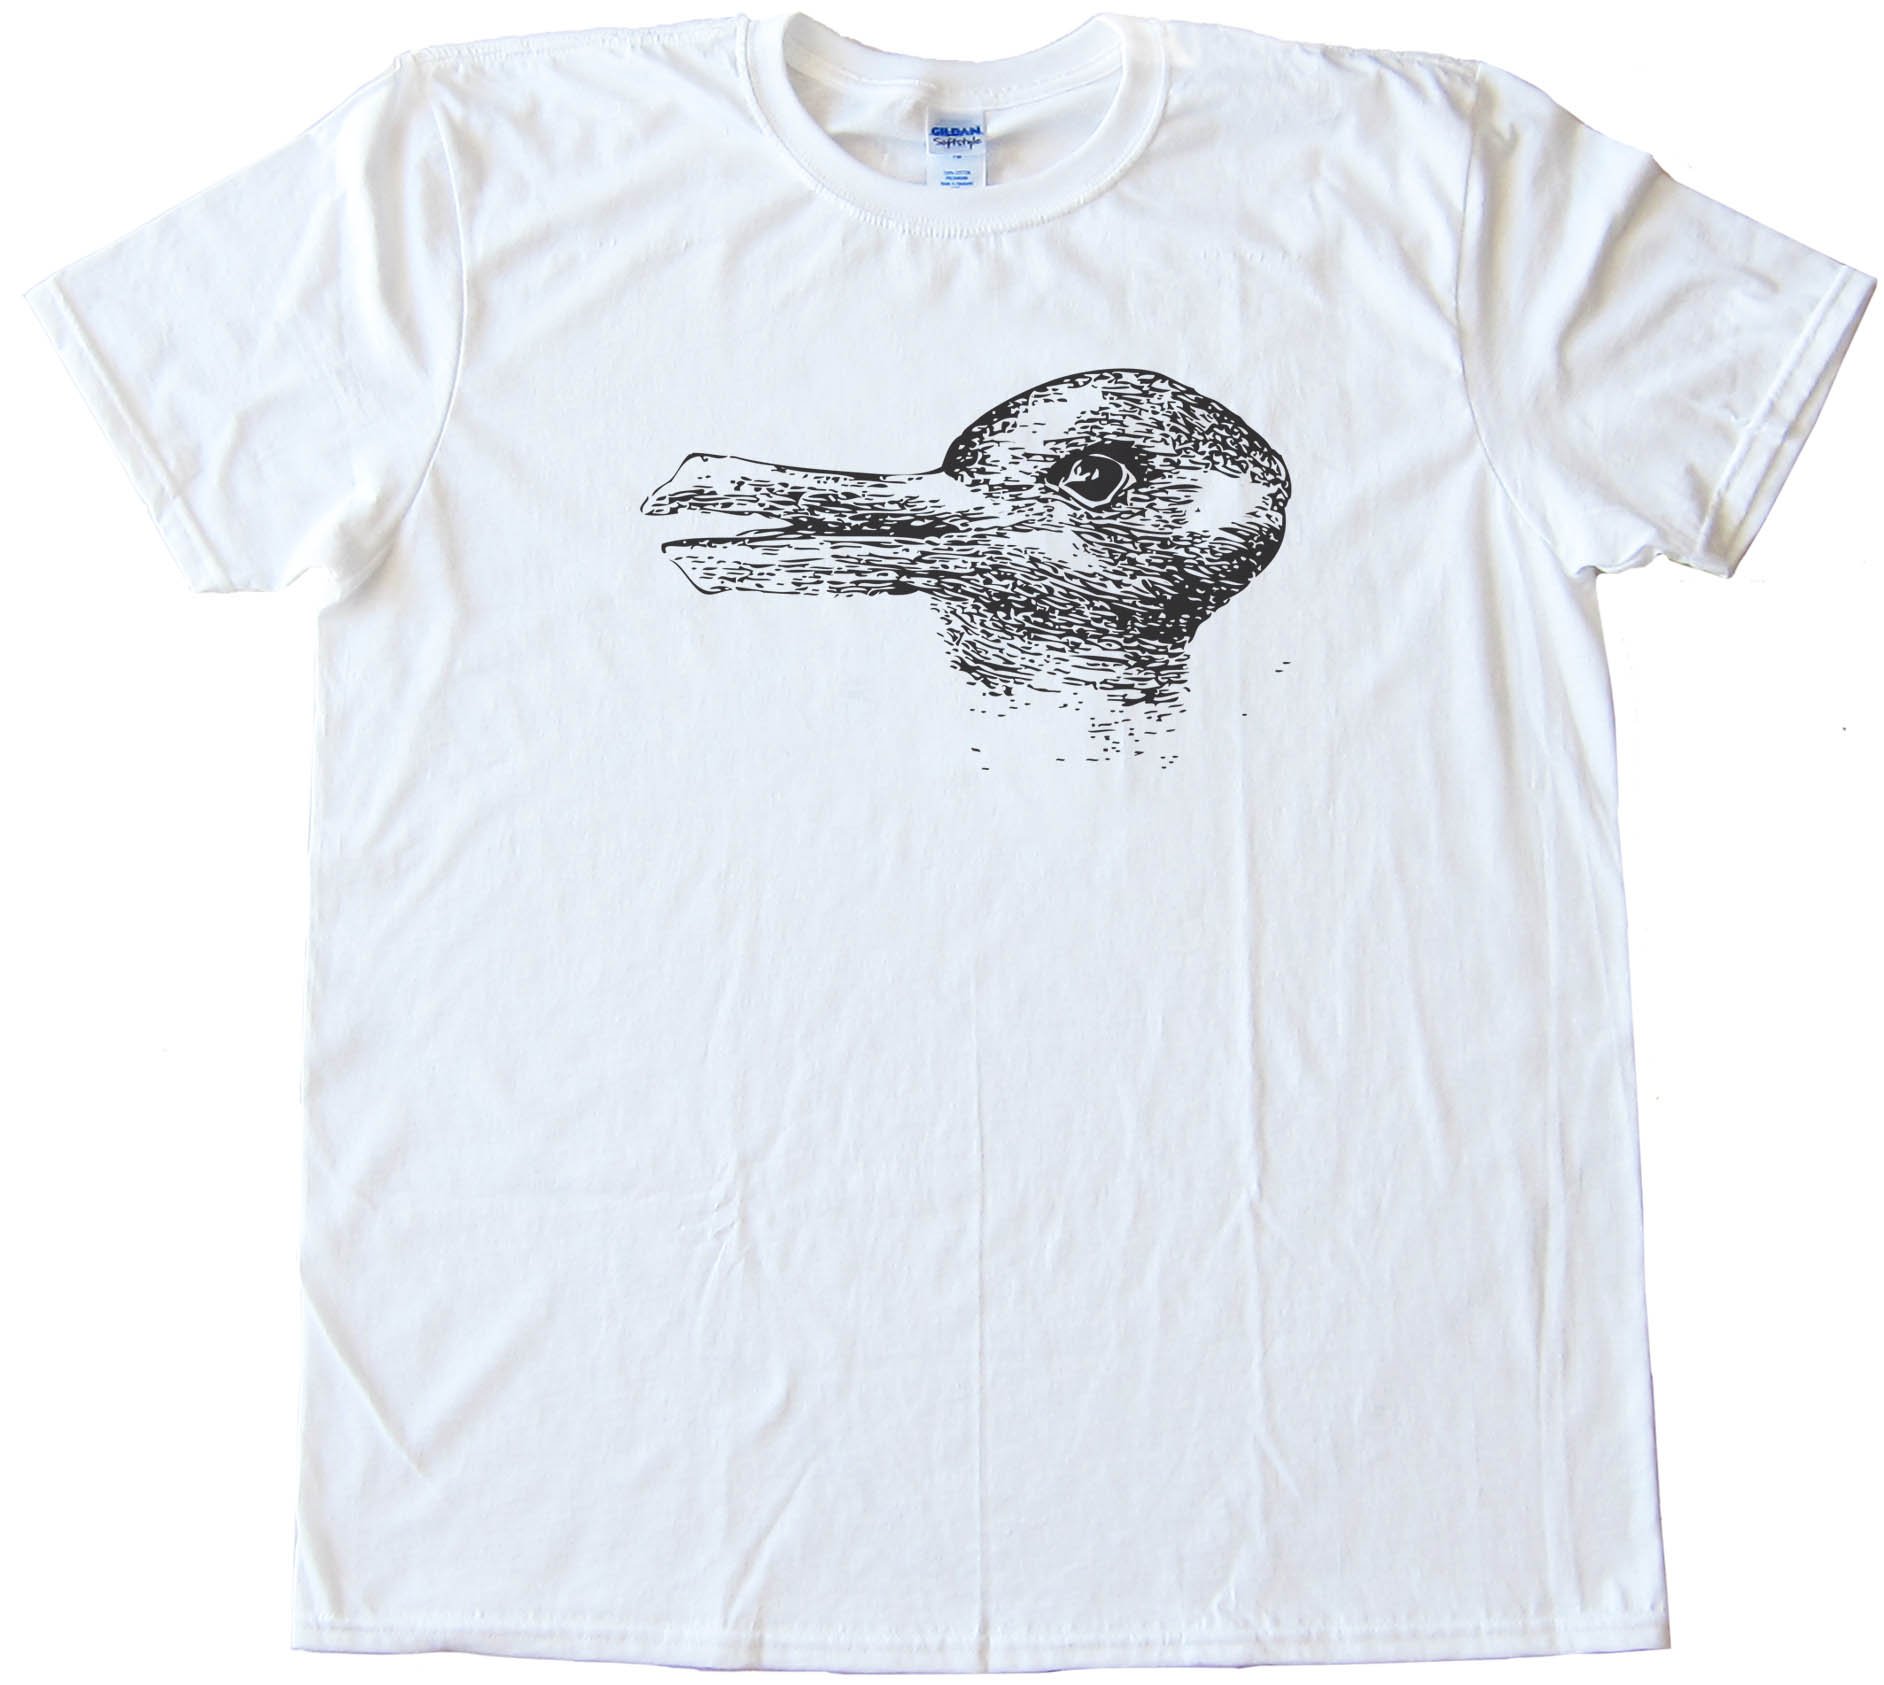 Duck Season Rabbit Season - Optical Illusion - Tee Shirt